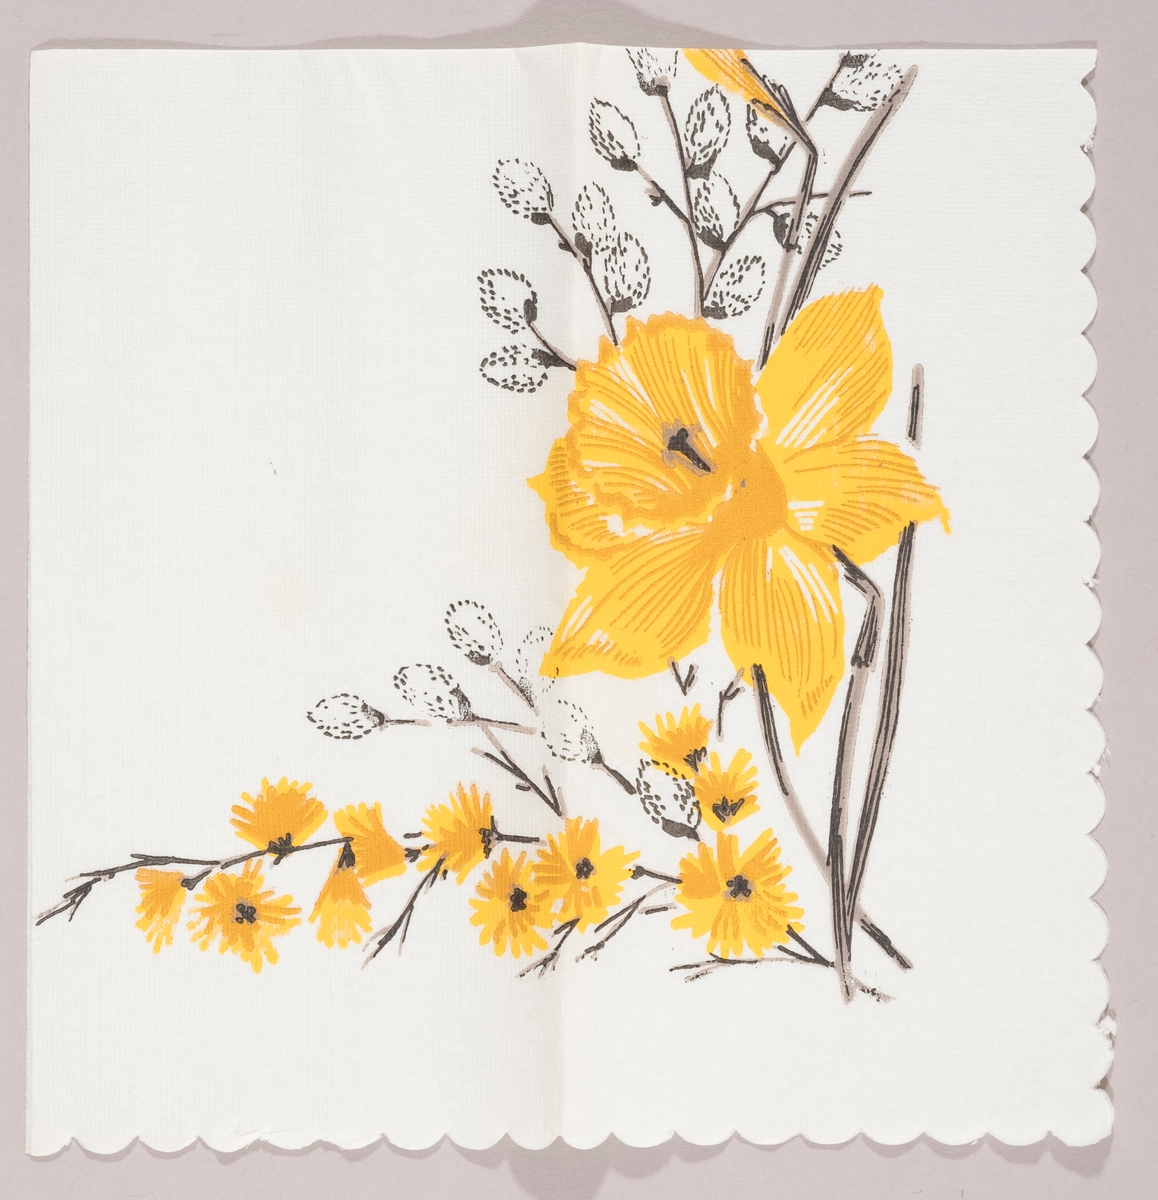 En påskelilje og grener med "gåsunger" og gule blomster